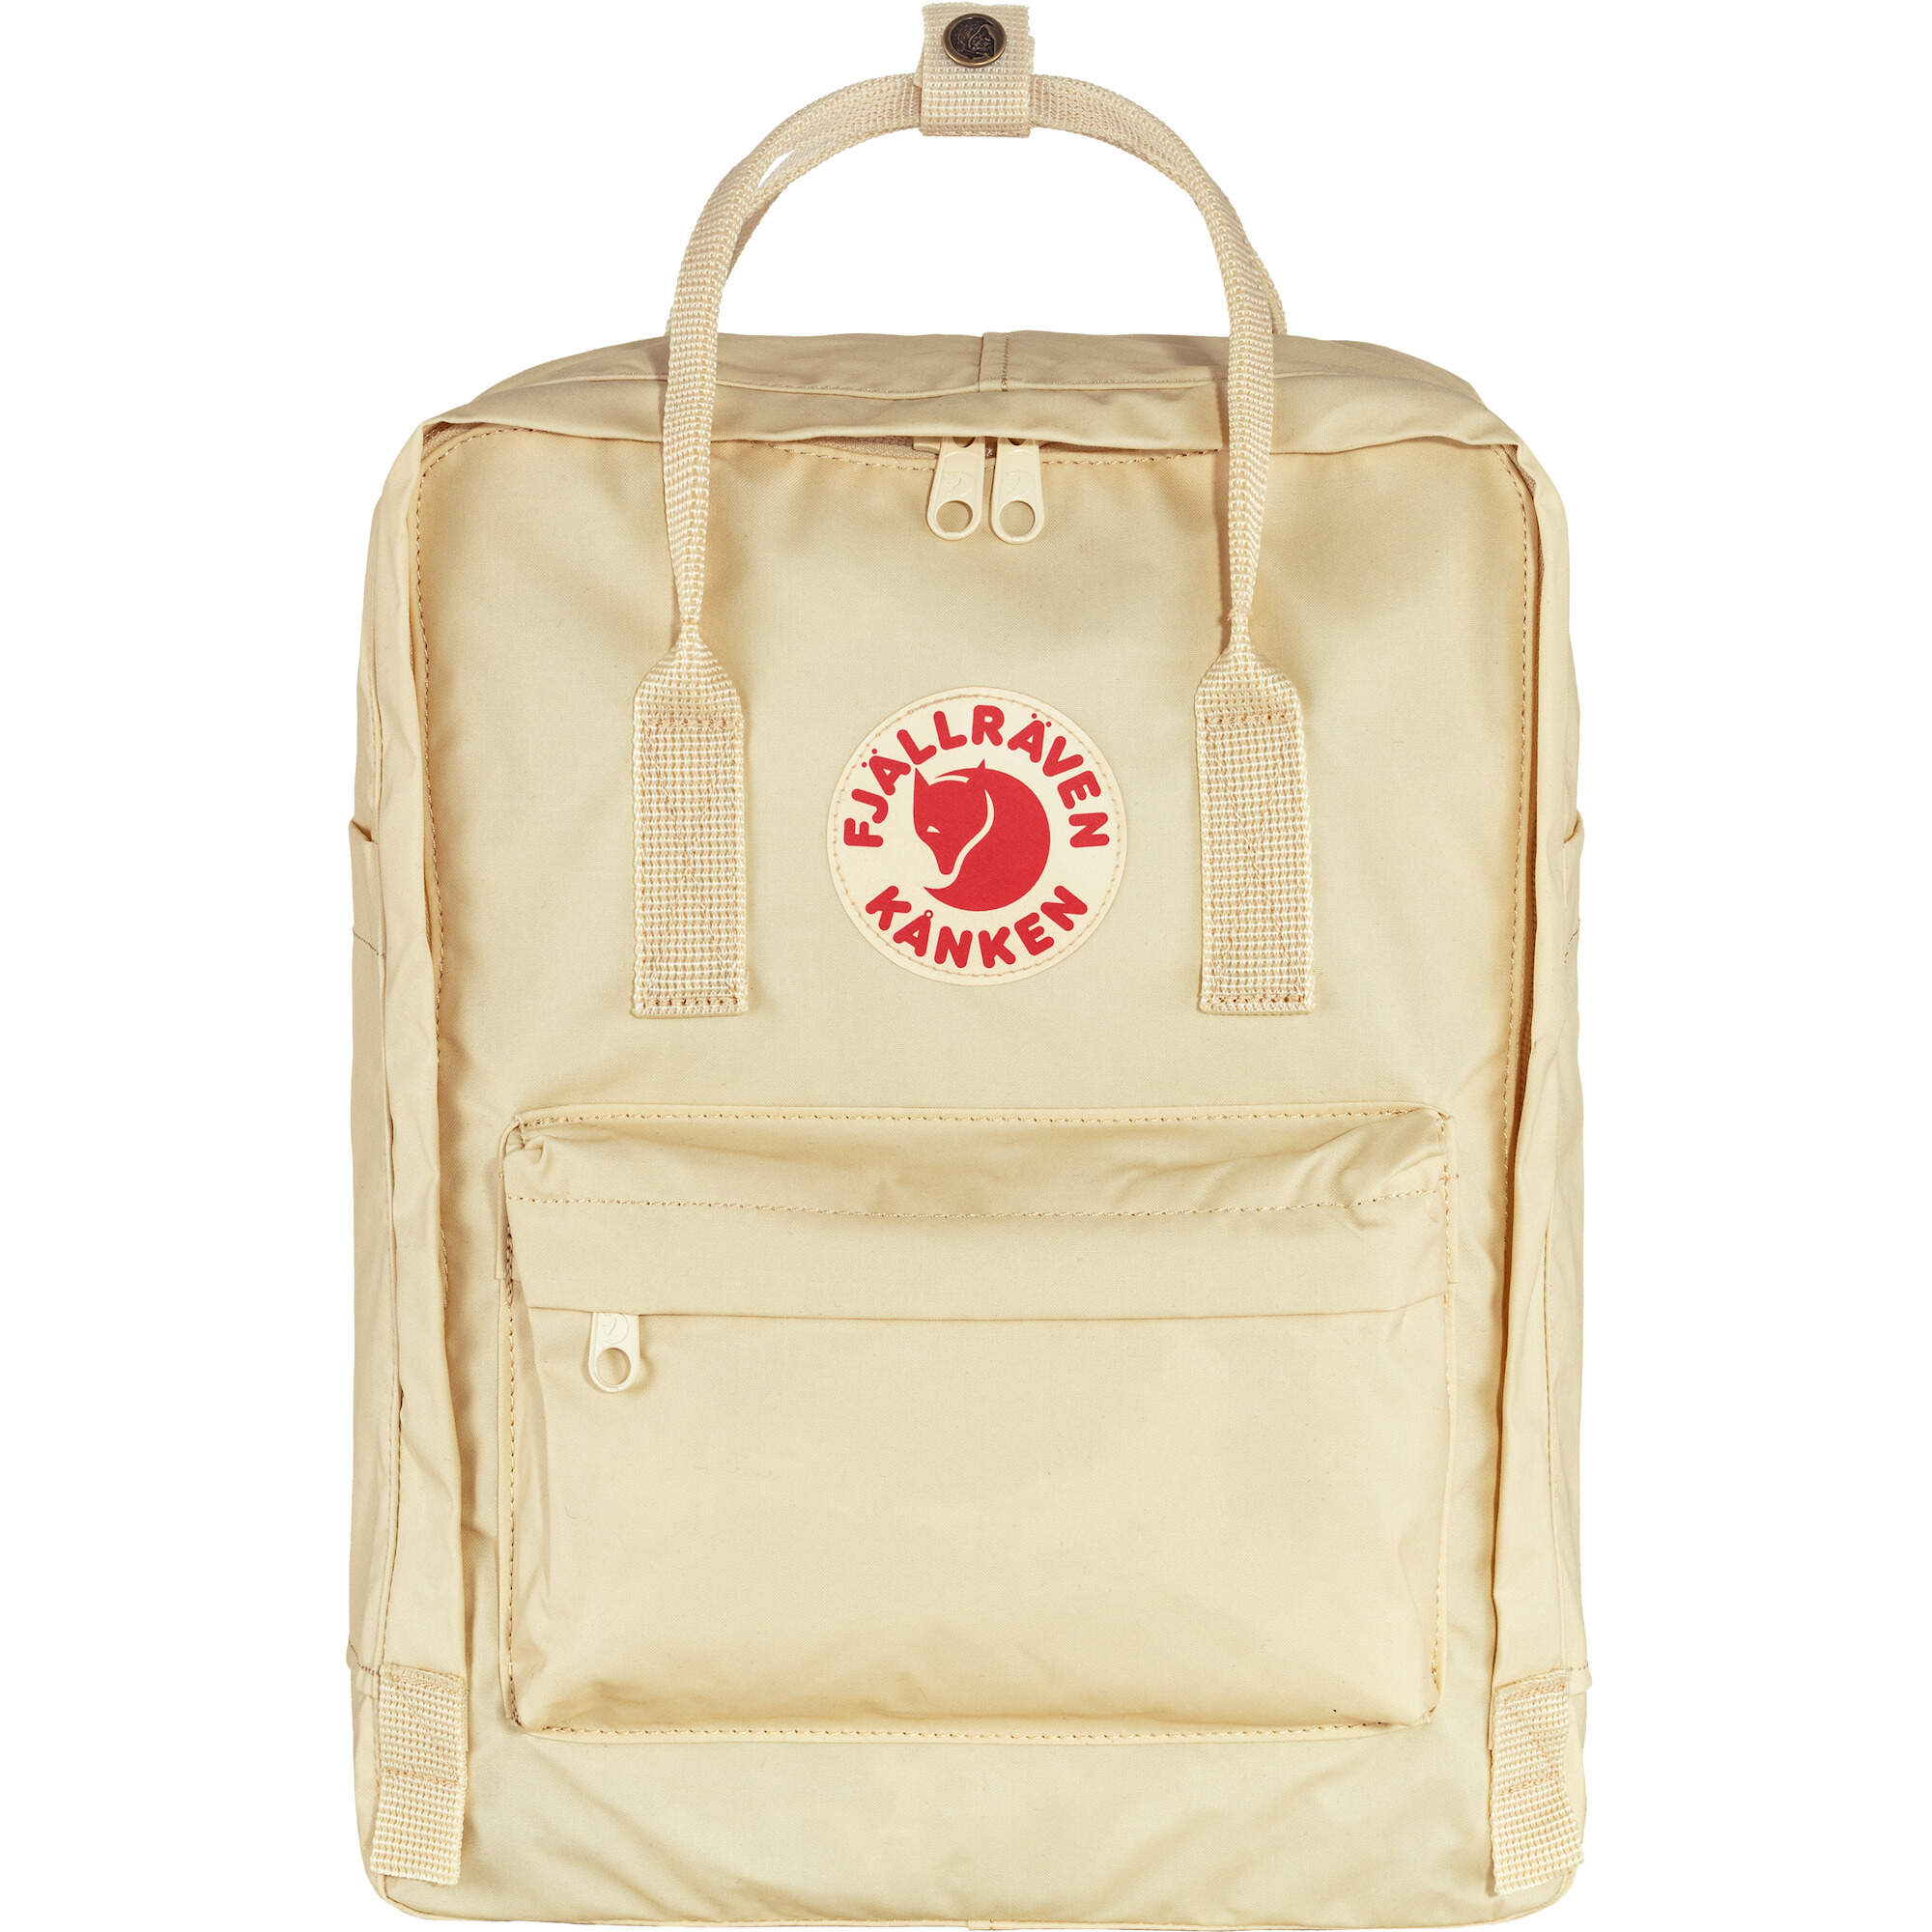 Women's Travel Shoulder Backpack Girls' School Bags  Unisex Backpacks 7L/16L/20L 